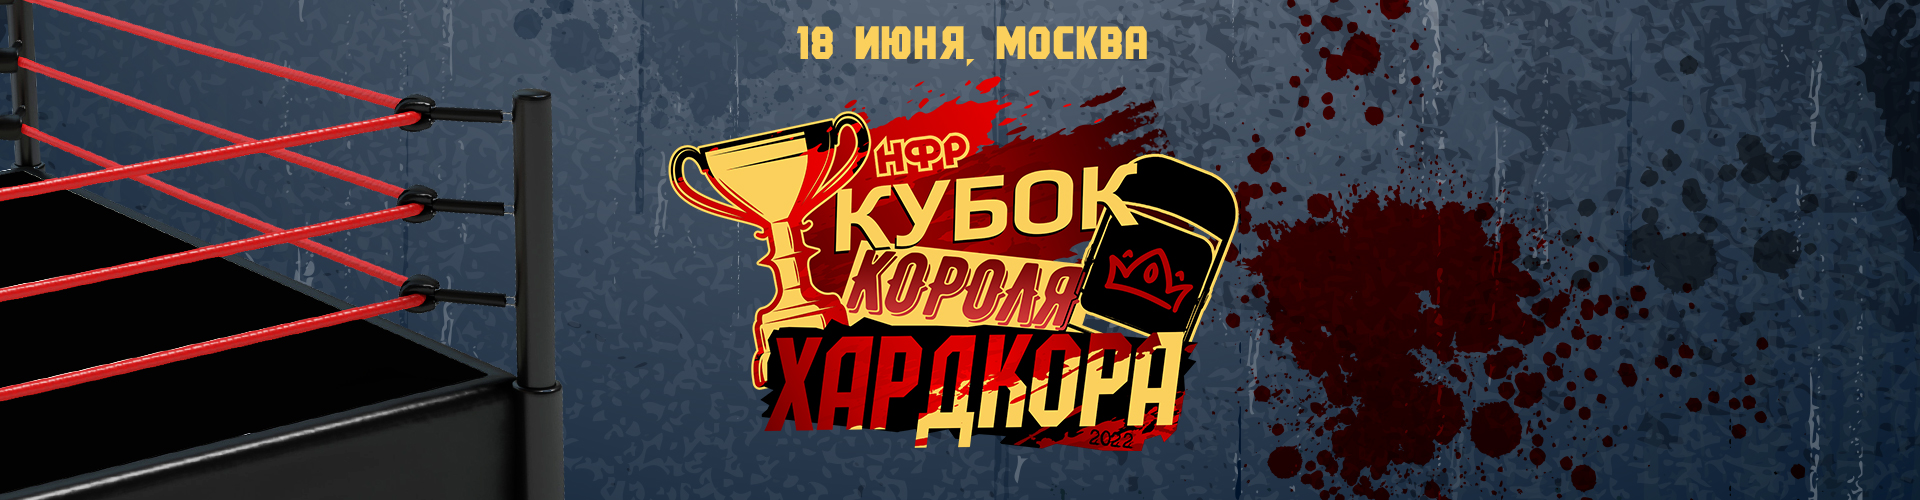 НФР "Кубок короля хардкора" 2022 - 18 июня в LovelyLOFT